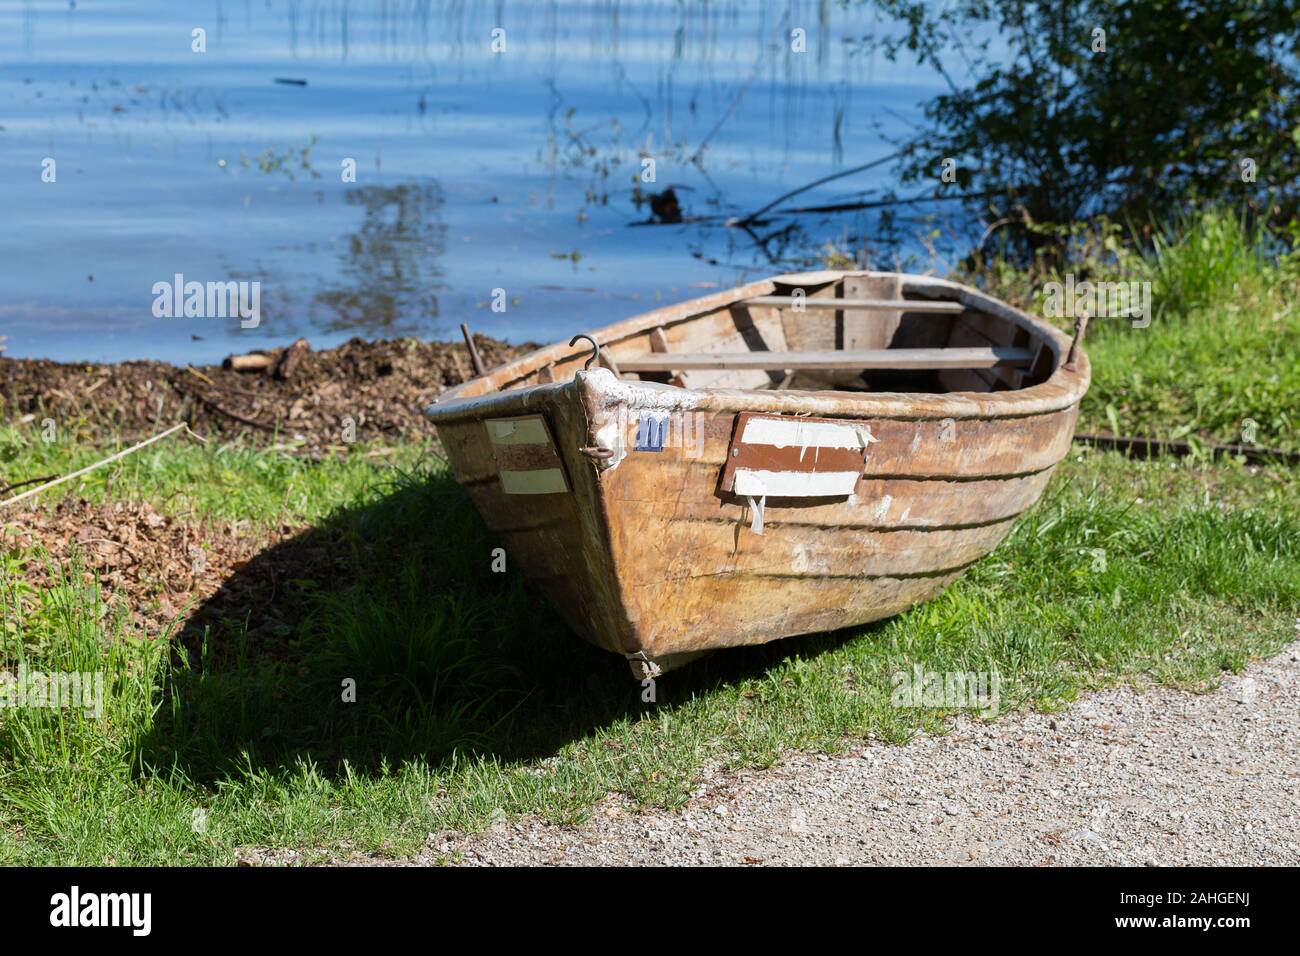 Fila de madera bote / bote de remos en la orilla del lago Ammersee. Pintoresca y bella escena, tranquila y pacífica. Foto de stock